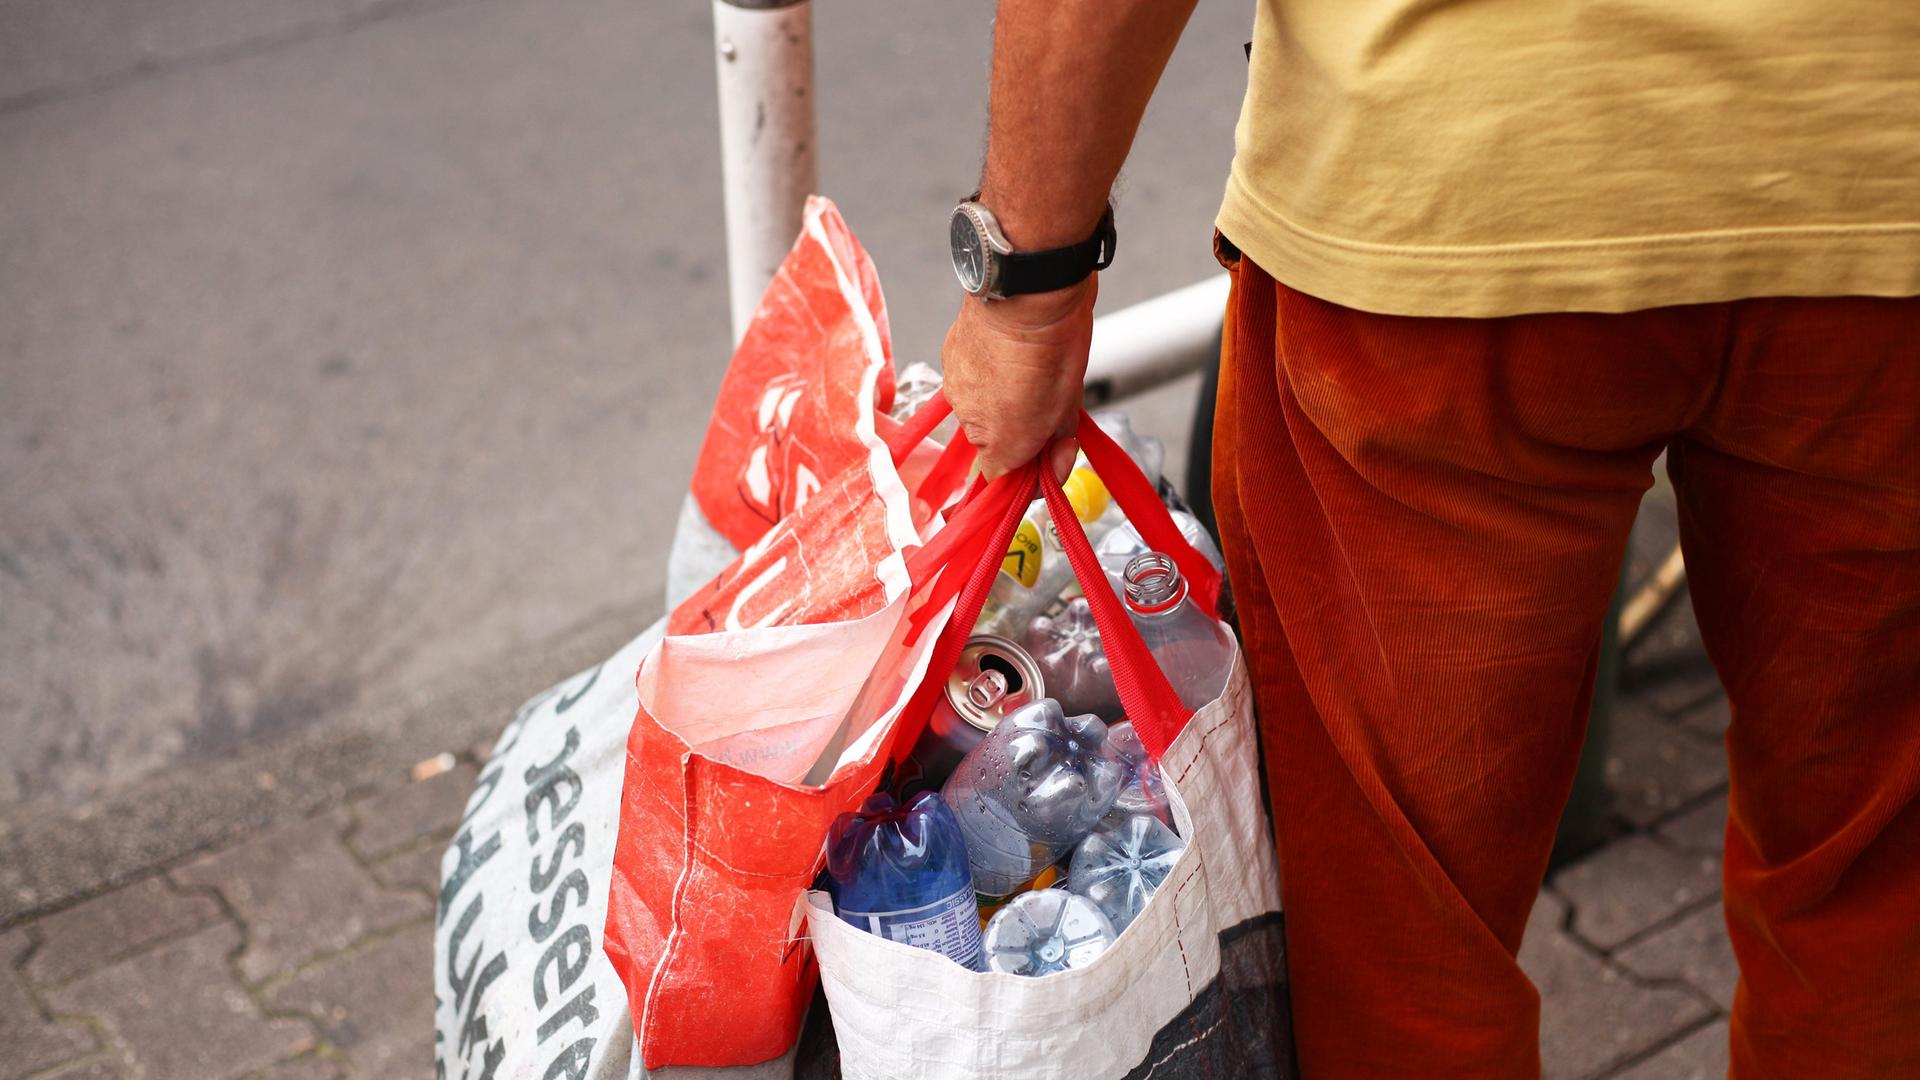 Detailaufnahme eines Mannes, der zwei Plastiktüten voller Pfandflaschen trägt.